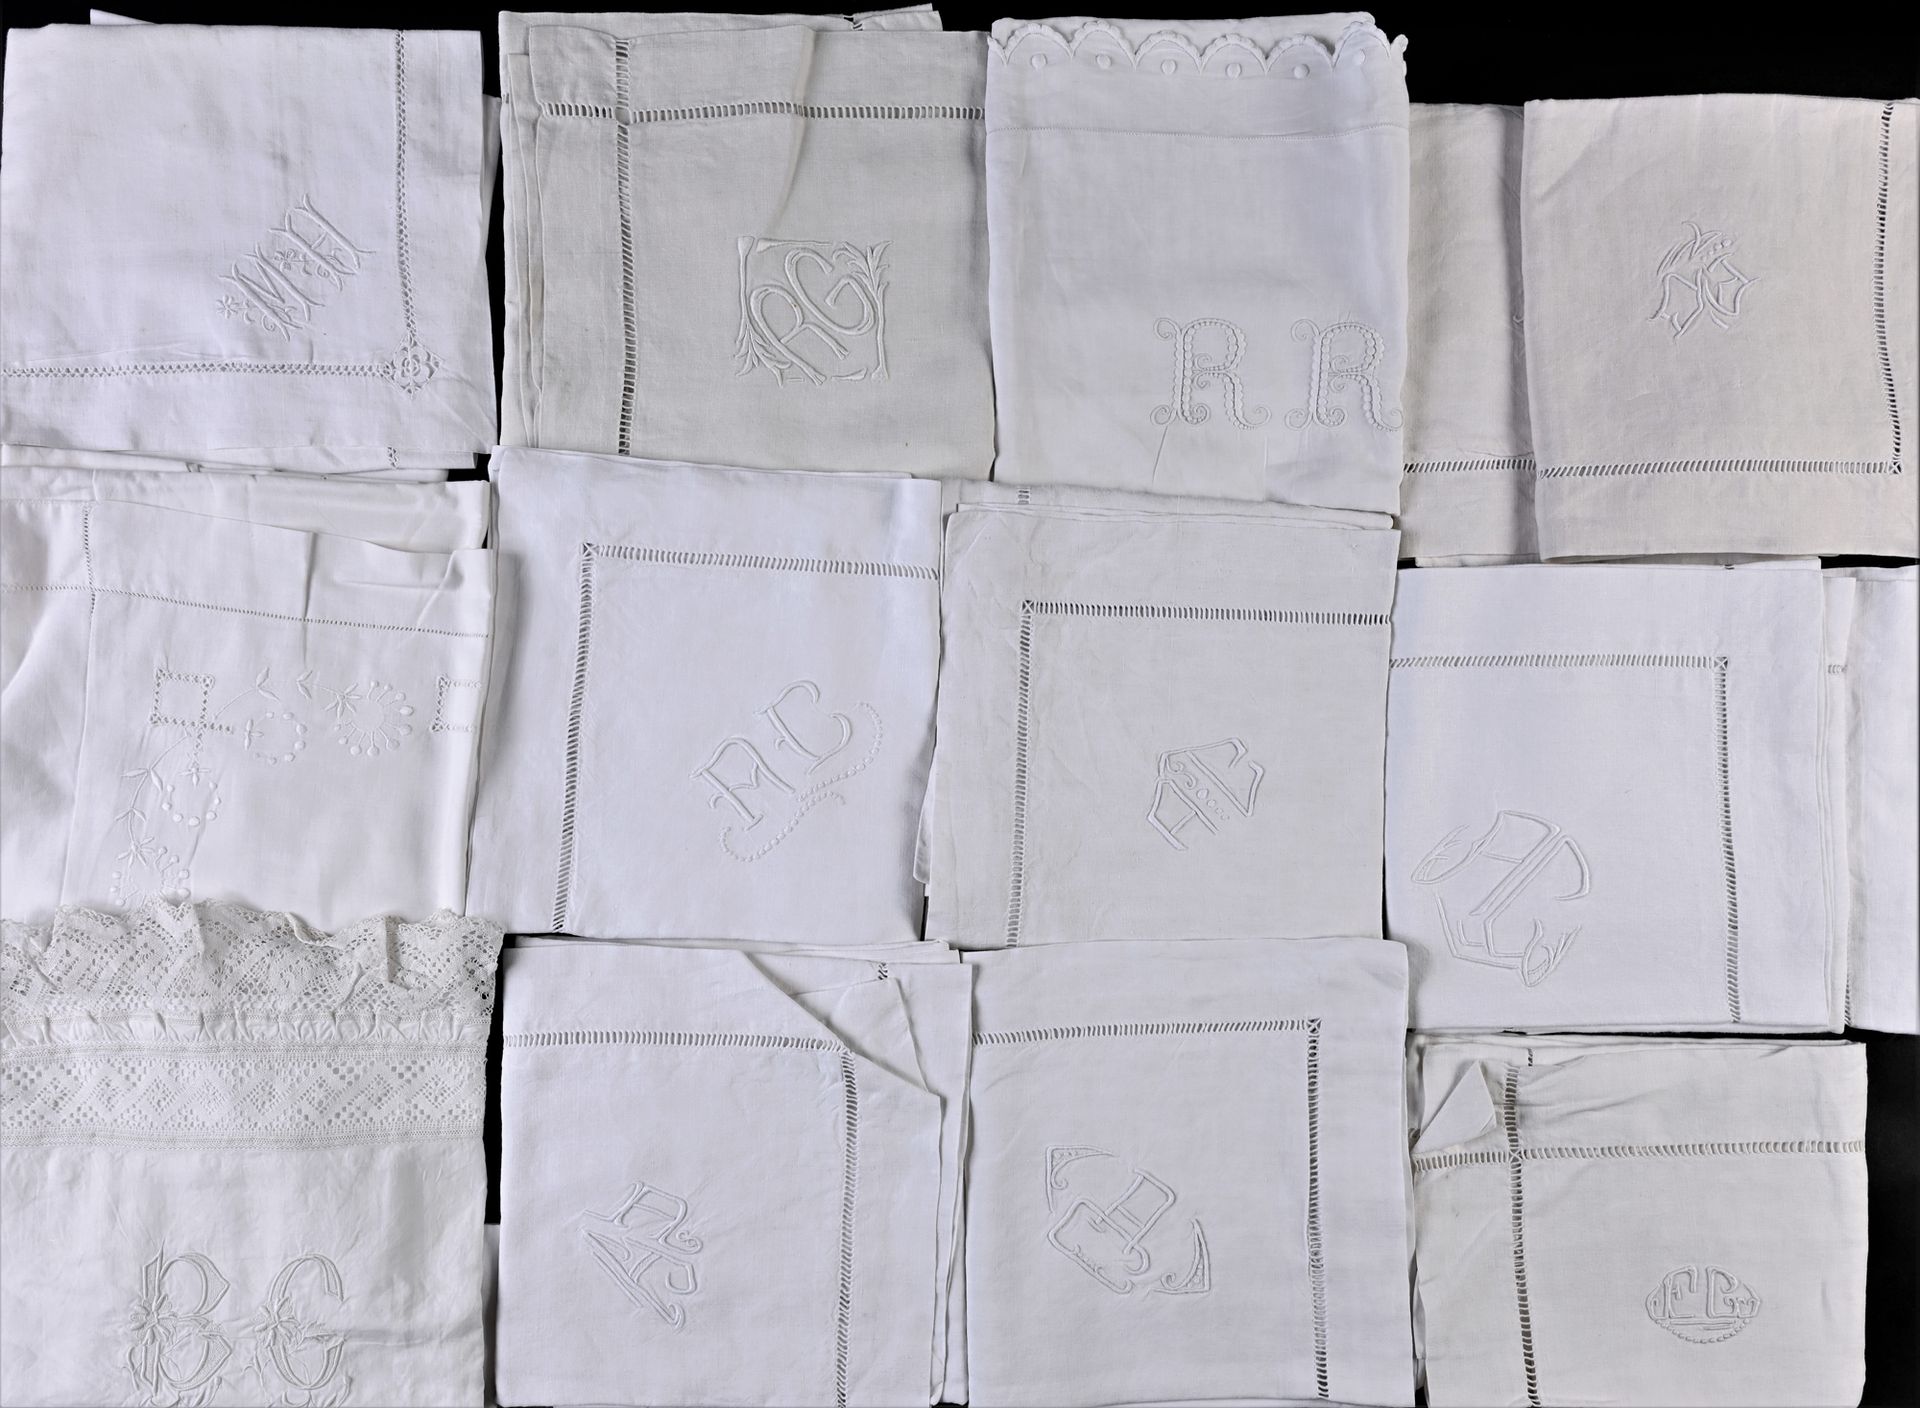 Null 七对枕头套和十八个枕头套，20世纪中期。
大部分是亚麻布，有些是棉布，大部分用日光处理，各种刺绣的单字（状况良好）